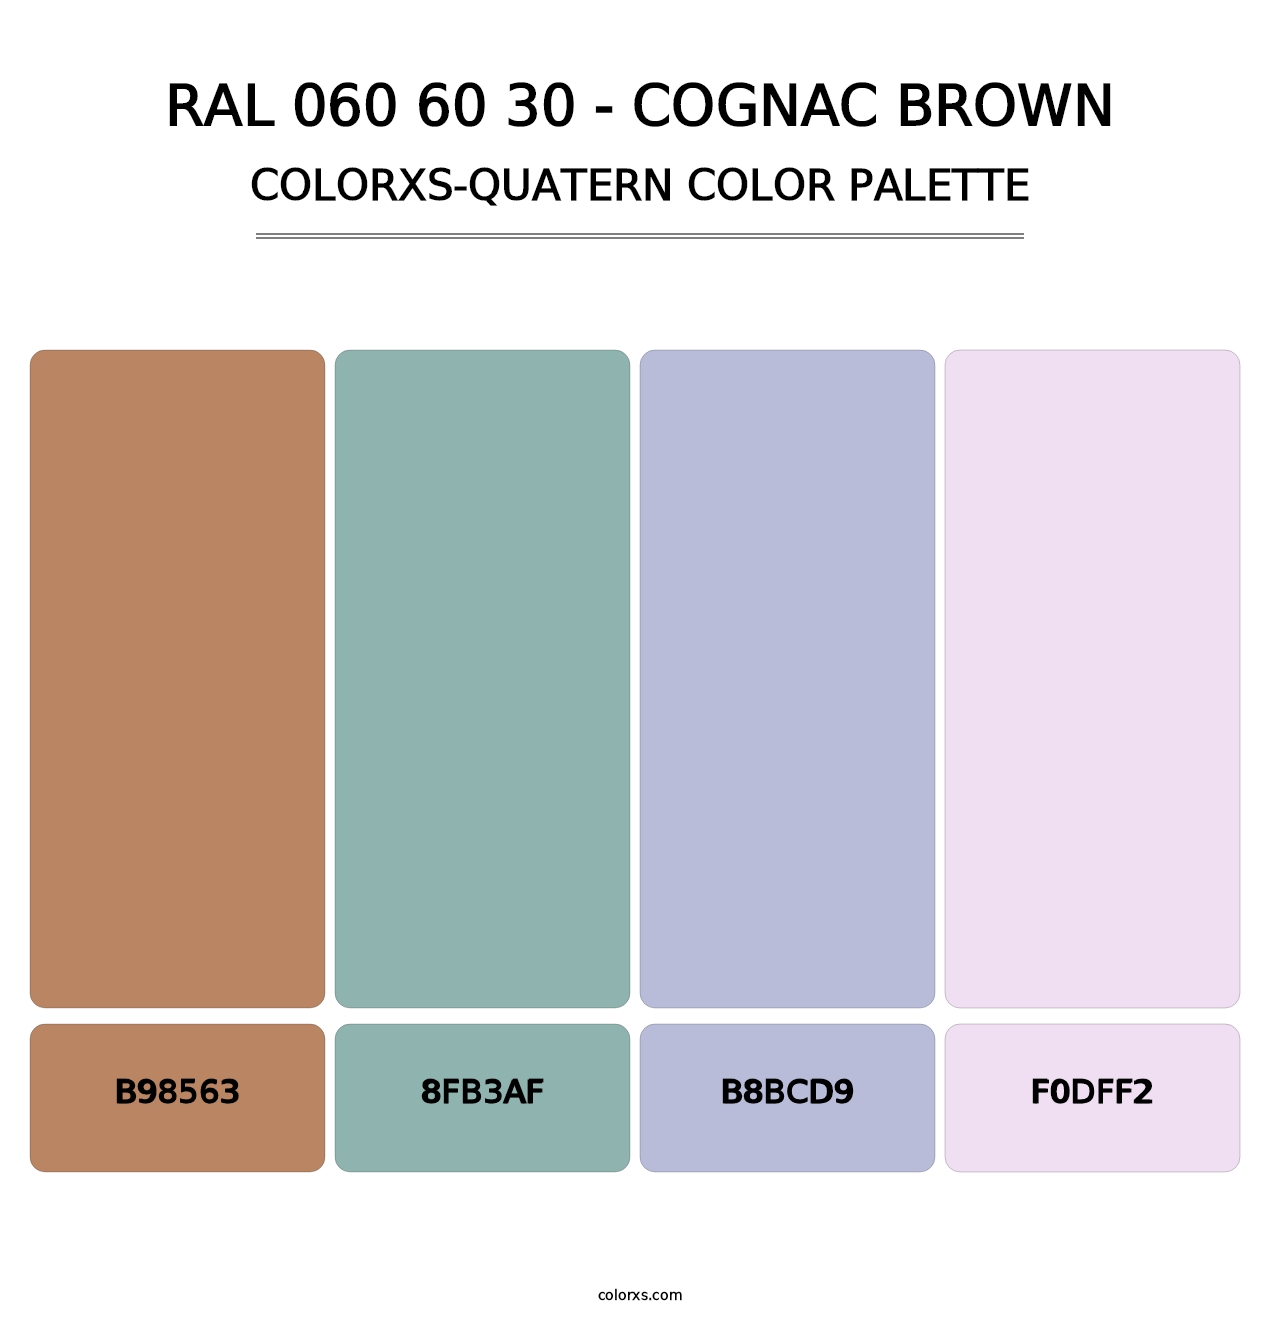 RAL 060 60 30 - Cognac Brown - Colorxs Quatern Palette